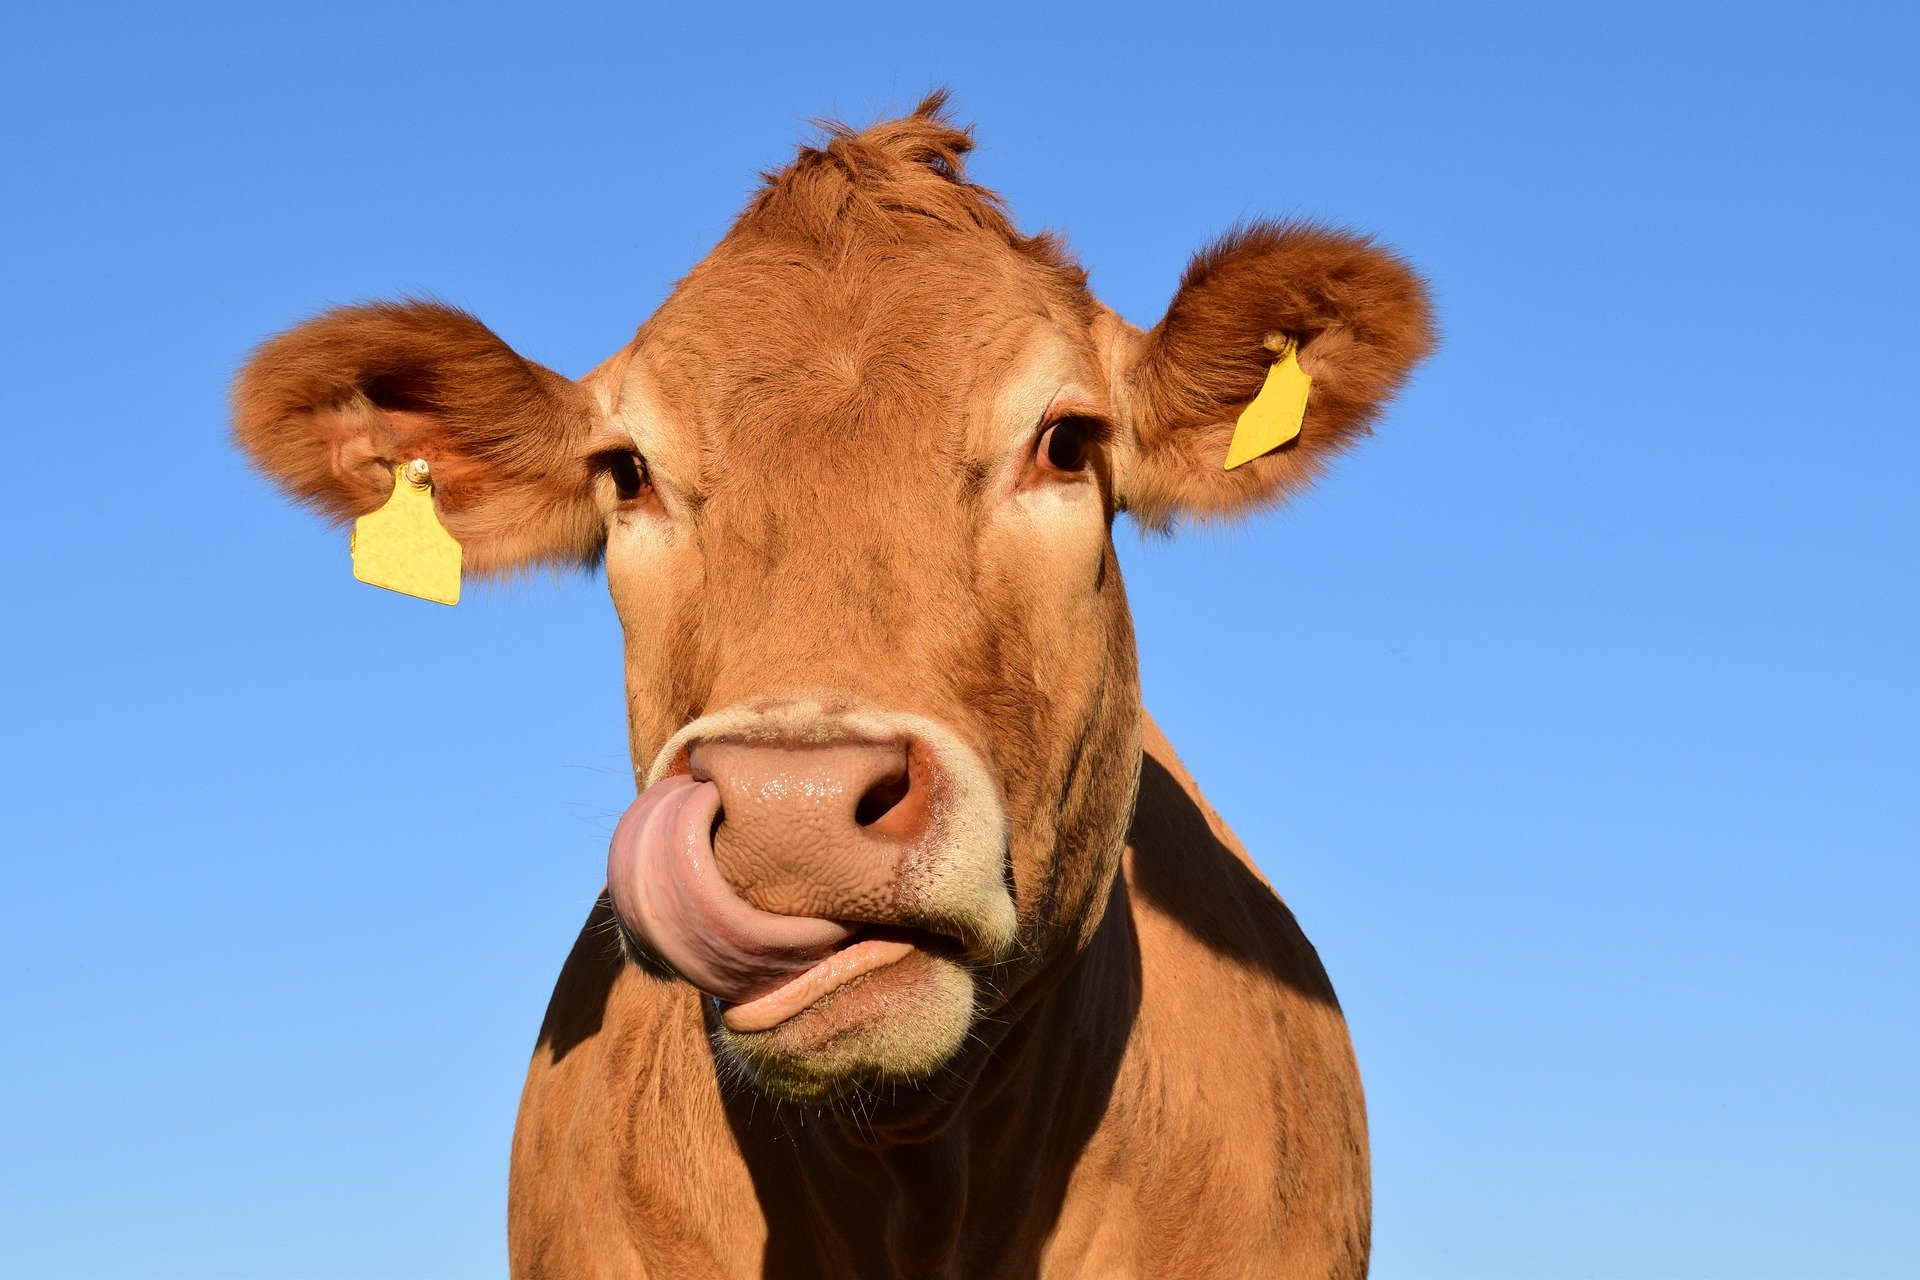 Une whey de bonne qualité est 100% issue du lait frais de vache et sans GMP - Overstim.s